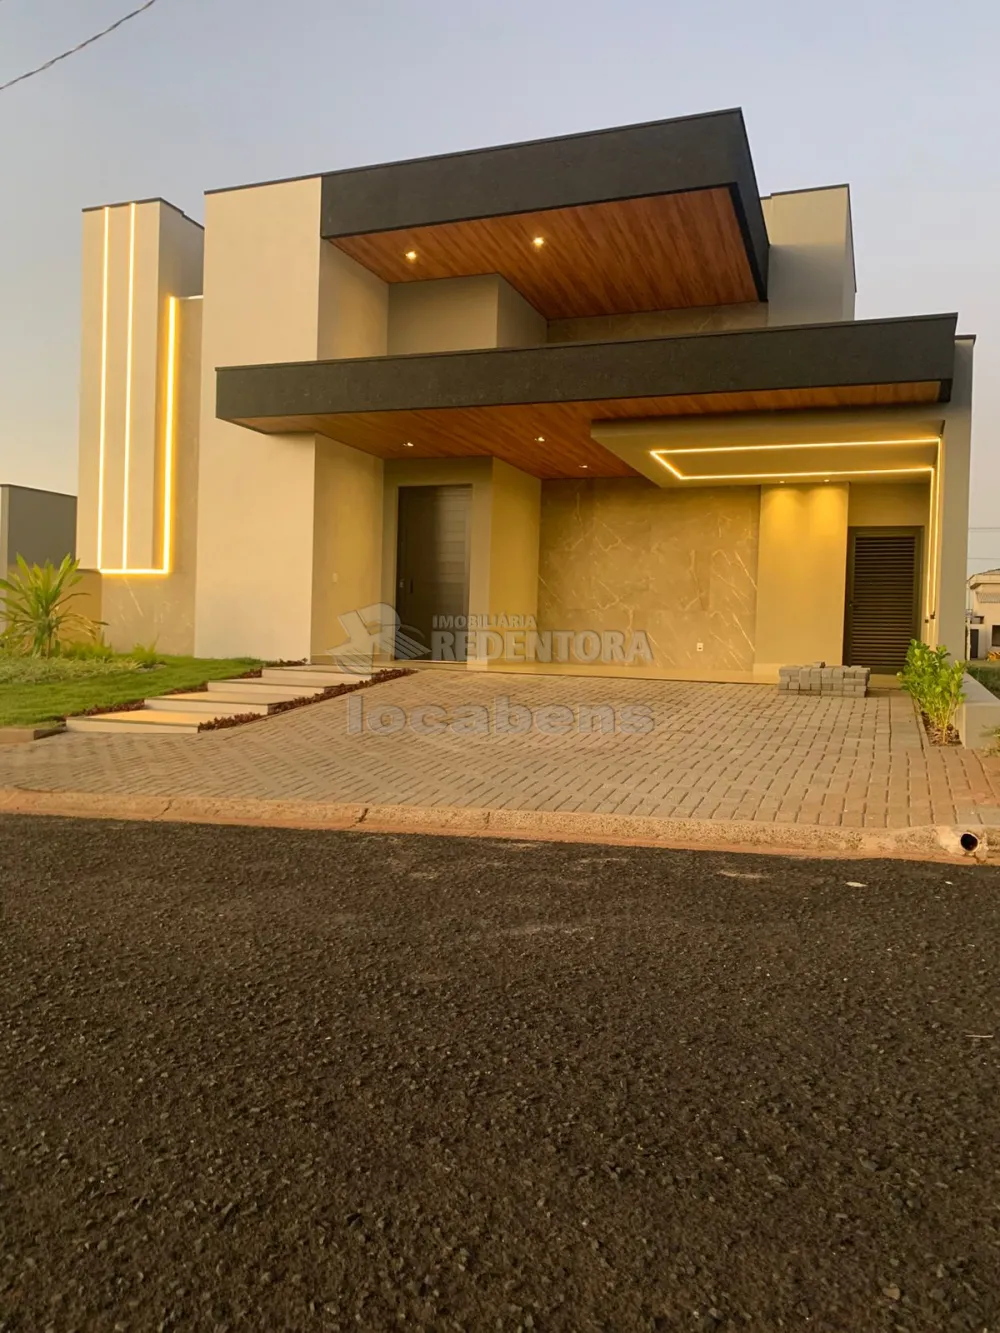 Comprar Casa / Condomínio em Mirassol apenas R$ 1.490.000,00 - Foto 3